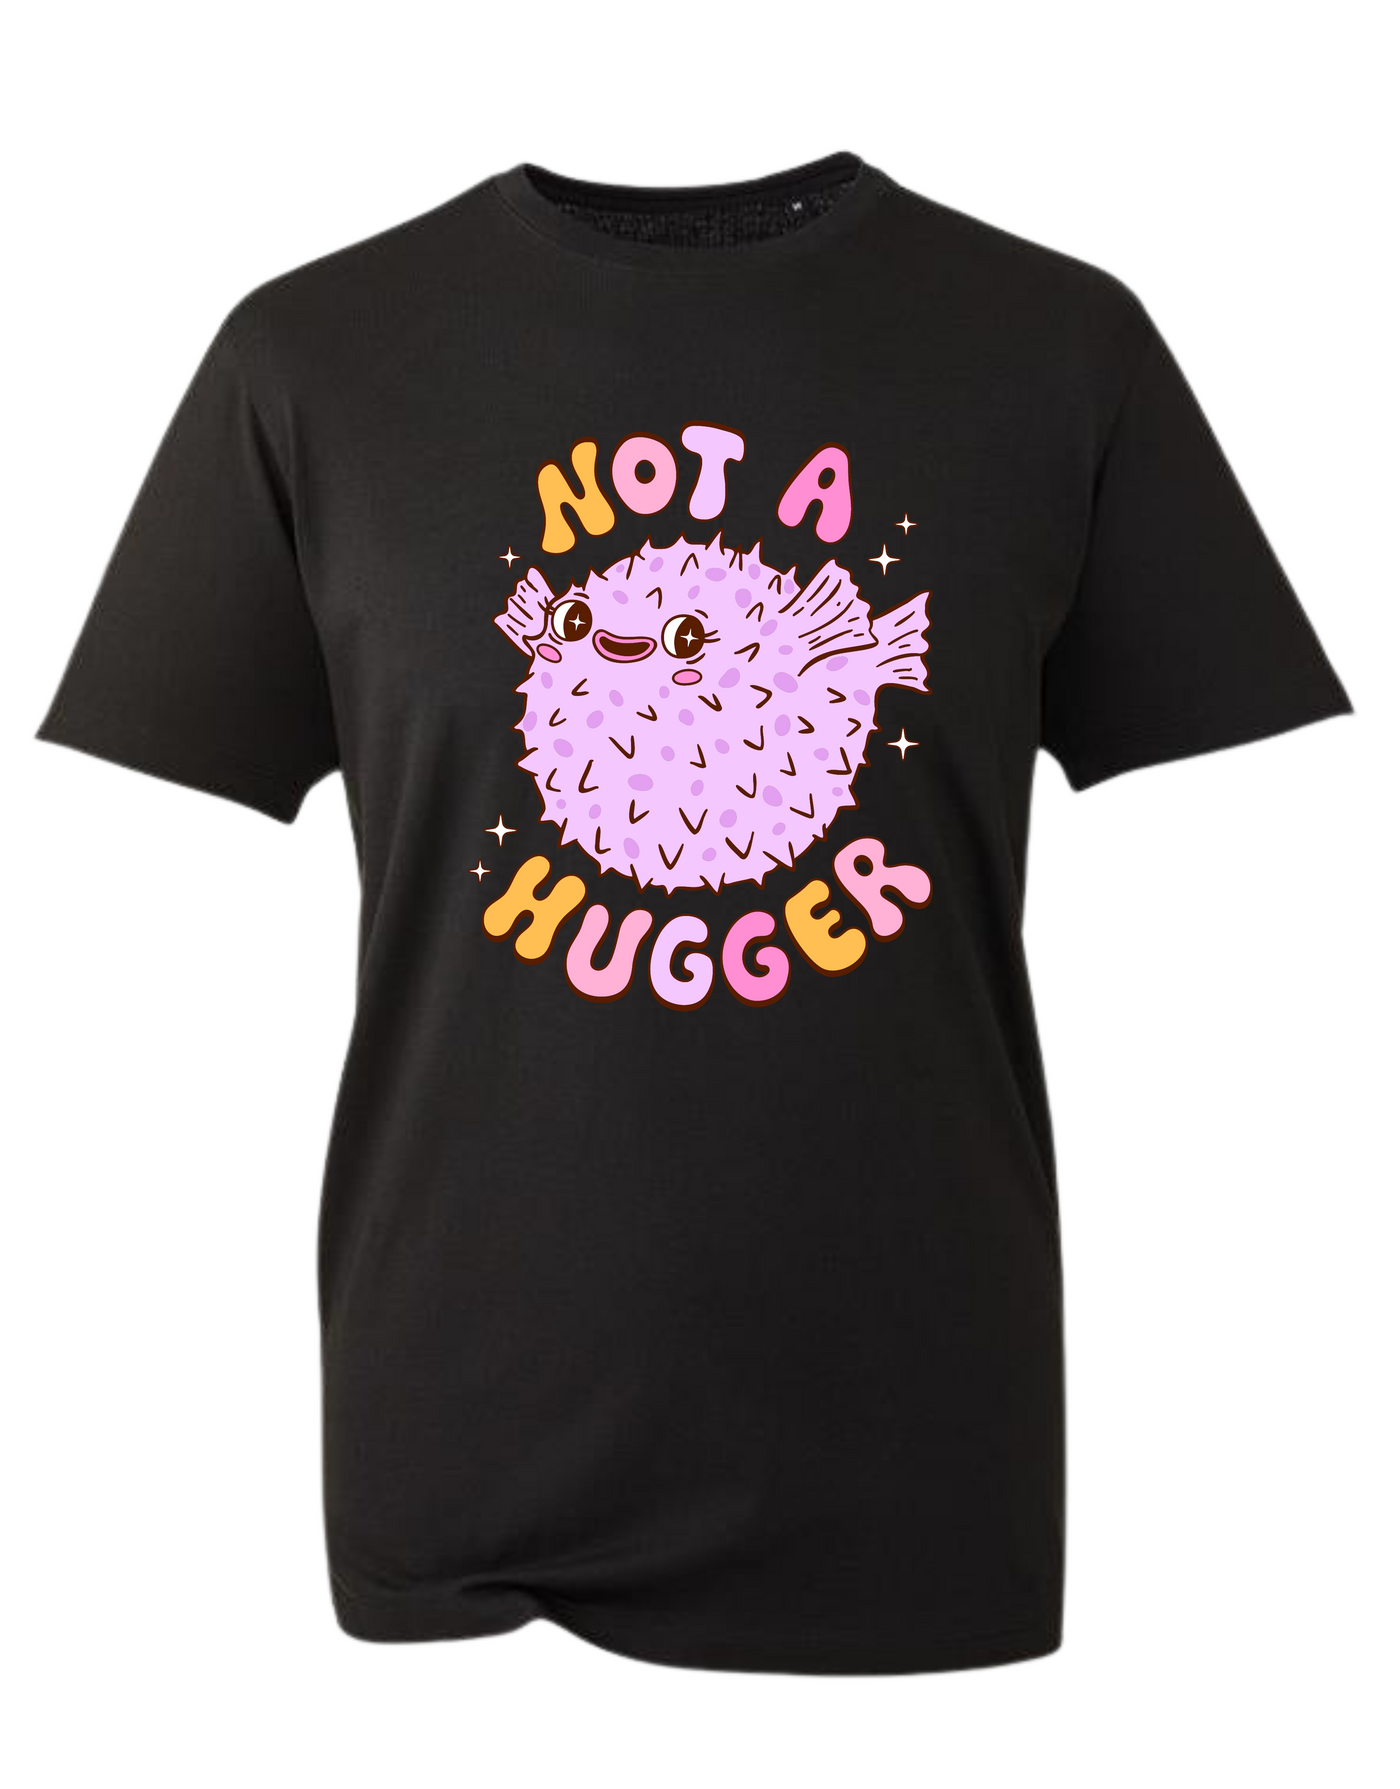 "Not A Hugger" Puffer Fish Unisex Organic T-Shirt